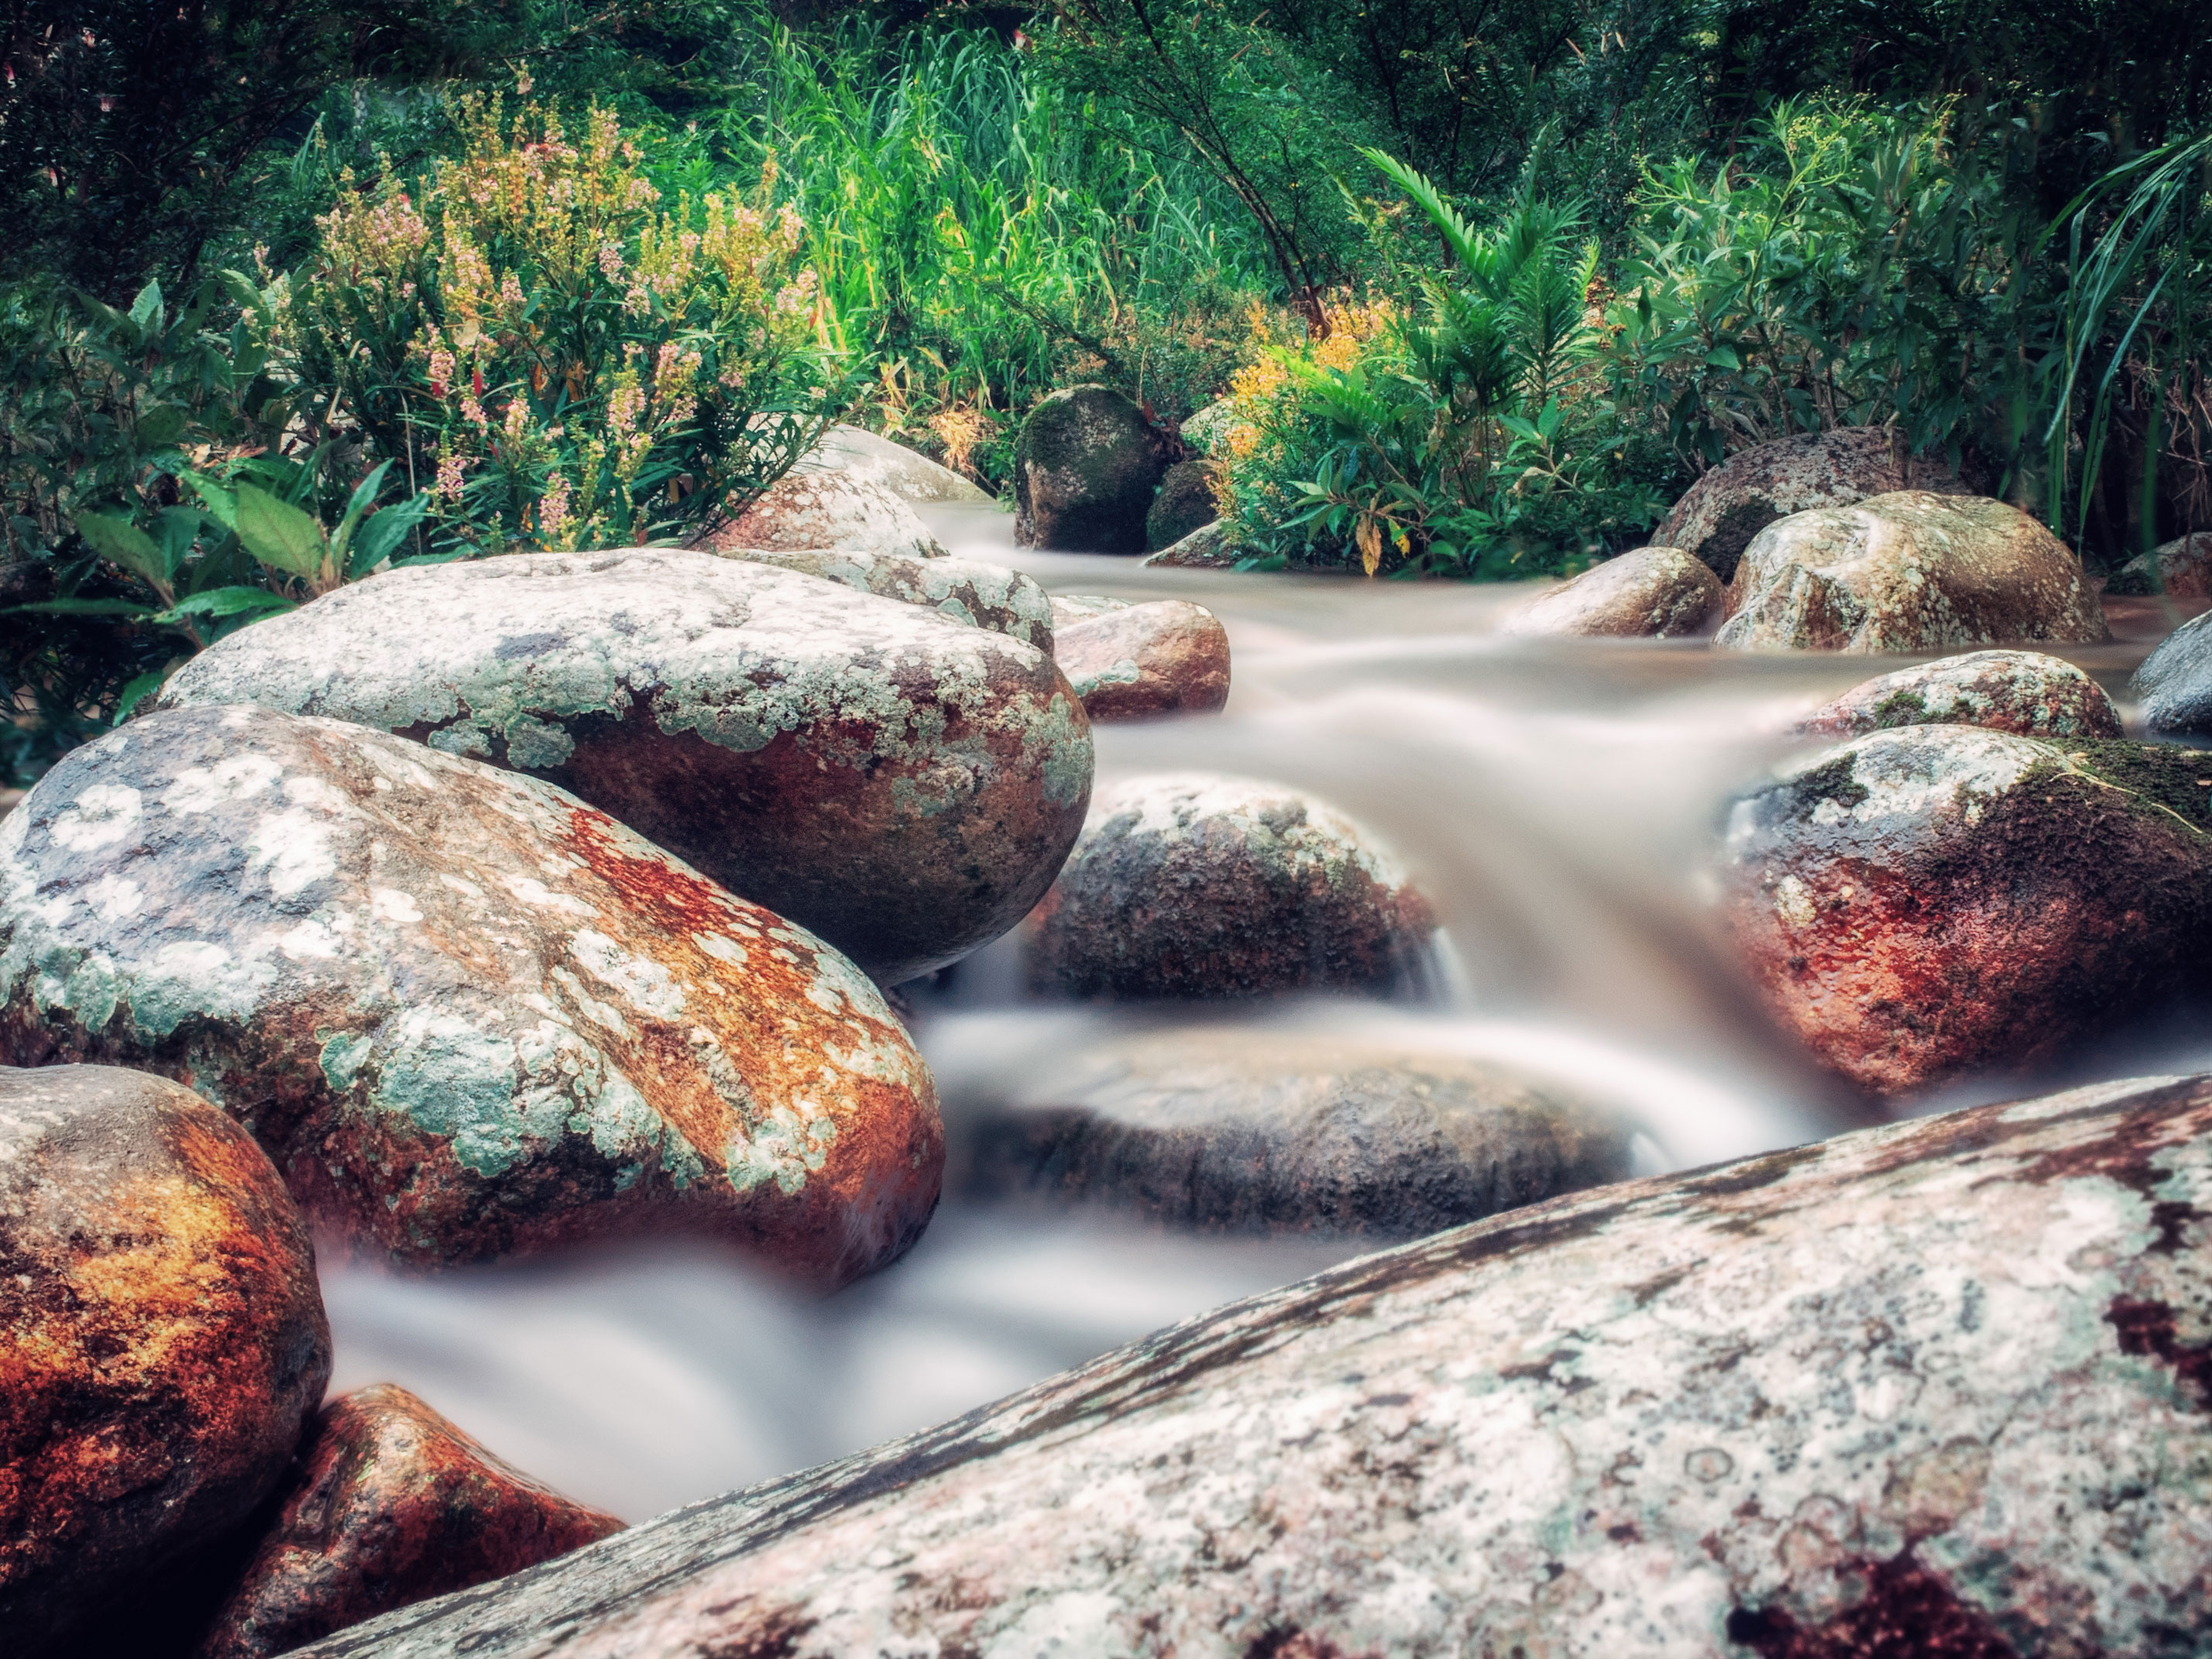 Видео со звуками природы. Звук ручья. Дорога для релаксации вода камни дерево. Звуки природы для медитации. Шум ручья.